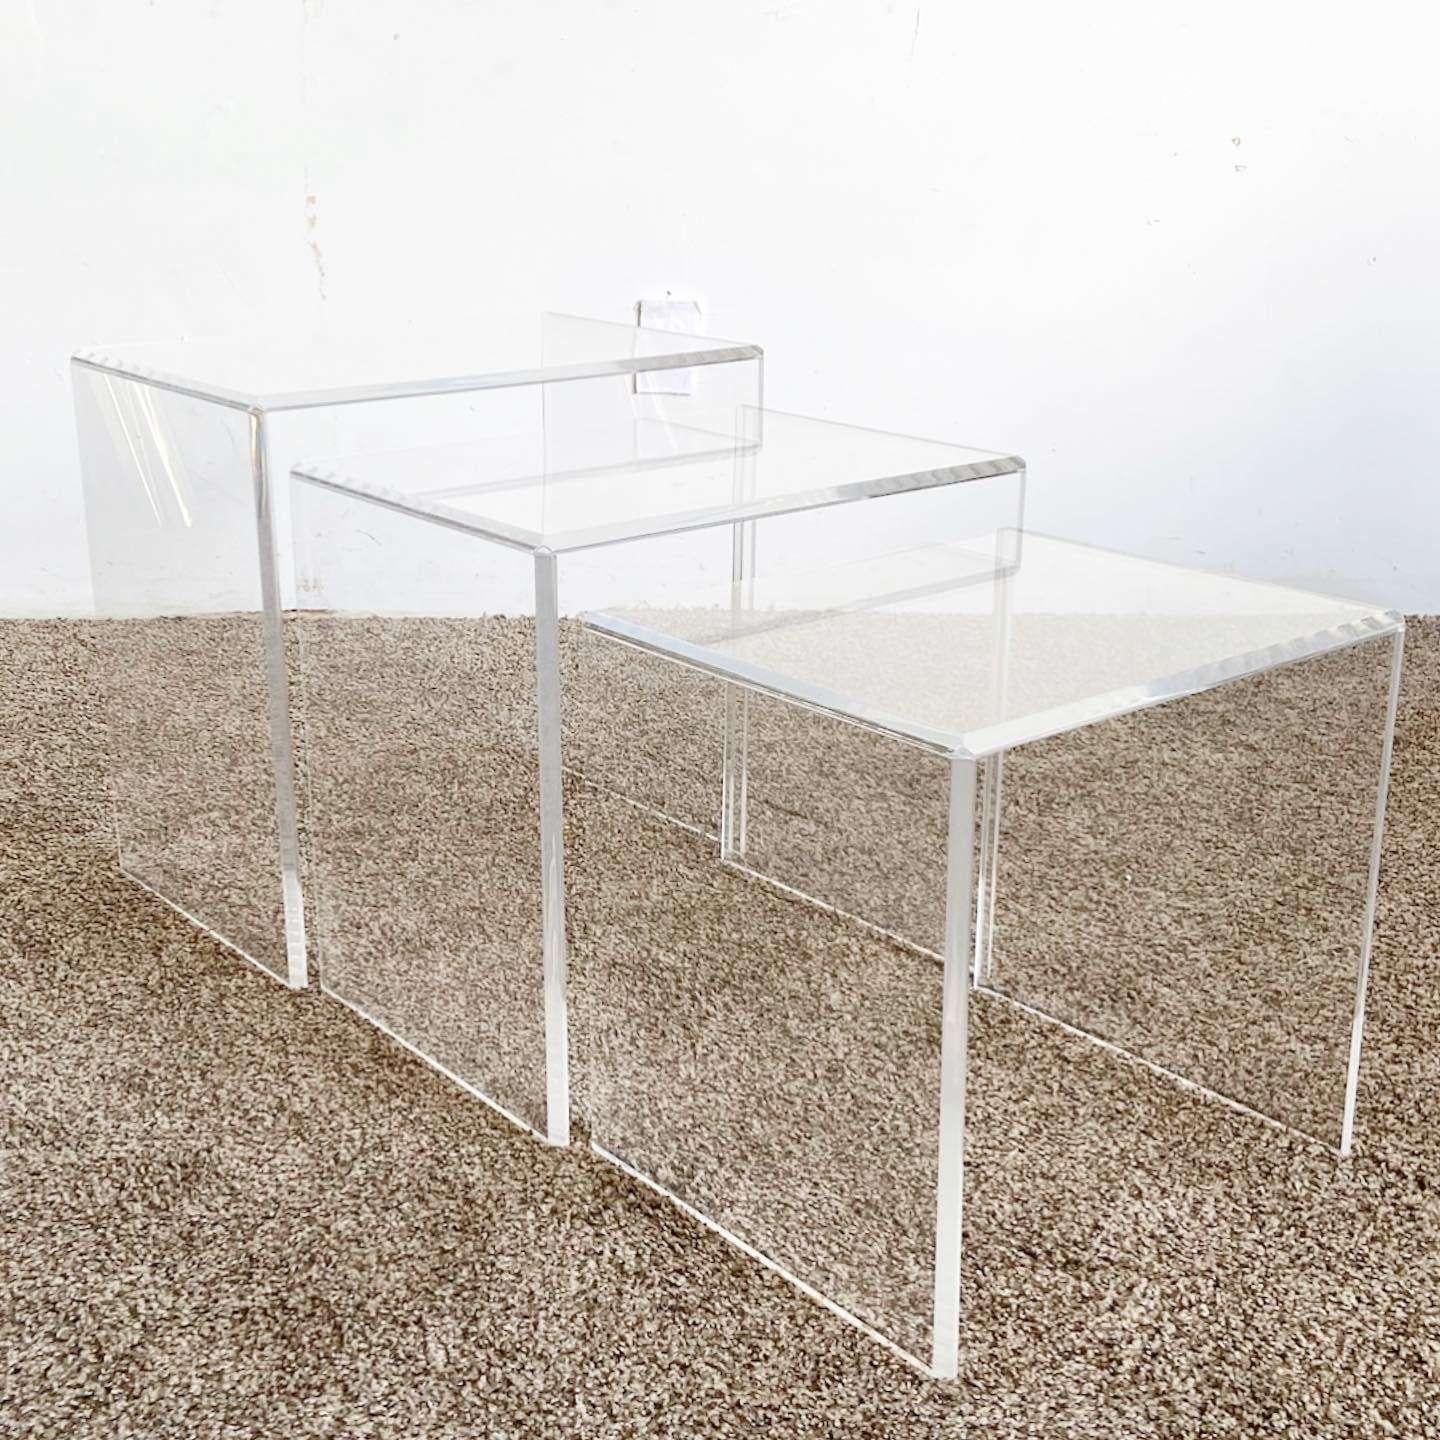 Ausgezeichneter Satz von 3 postmodernen Vintage-Lucit-Nesting-Tischen. Jeder Tisch besteht aus drei rechteckigen Stücken aus Lukit.

Kleiner Tisch misst 17 